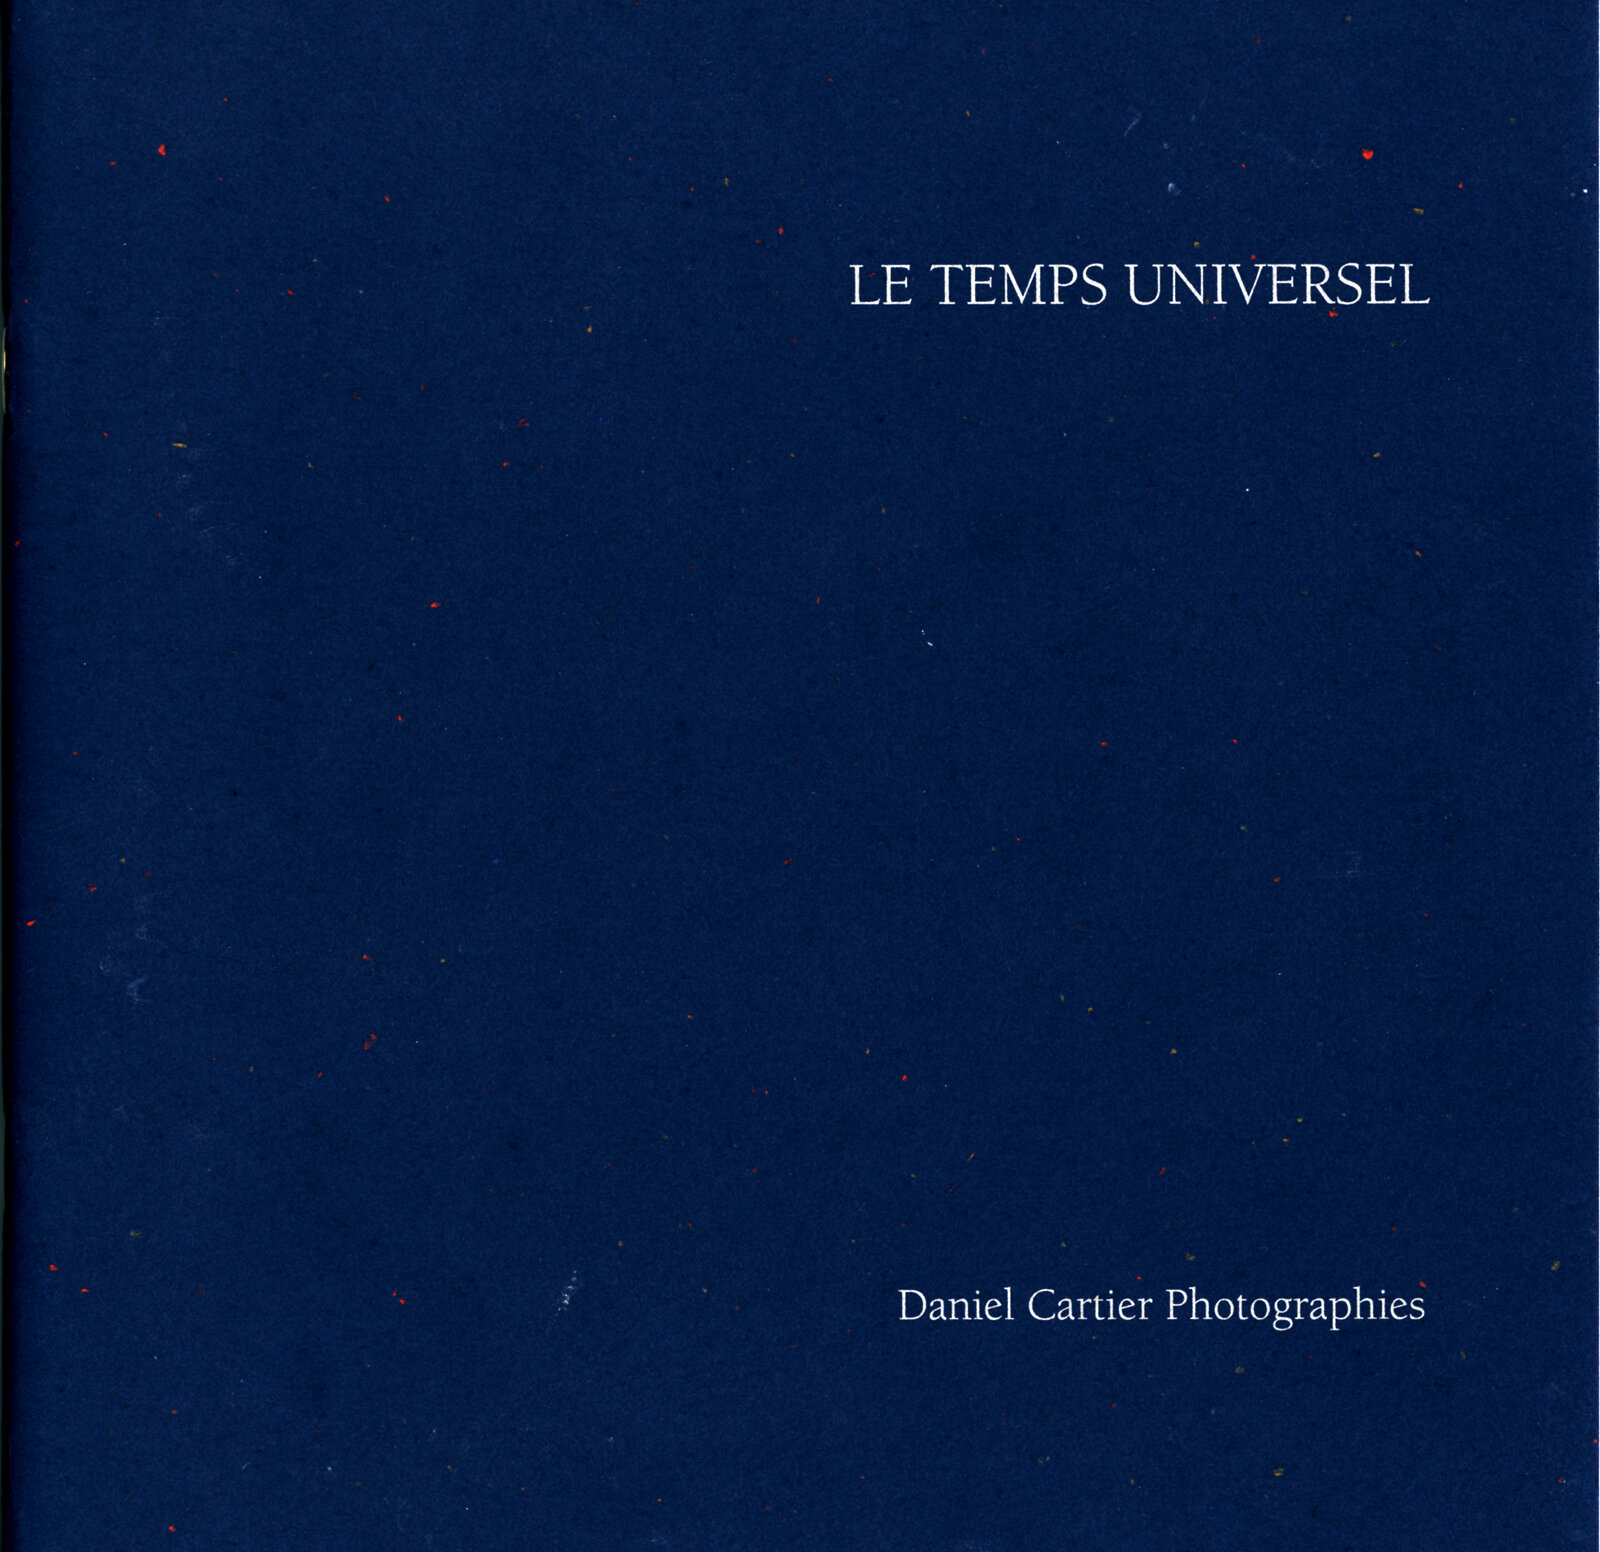 Le Temps Universel  Musée Elysée Lausanne &amp; PDNB, Dallas 1995-1996  catalogue printed in USA